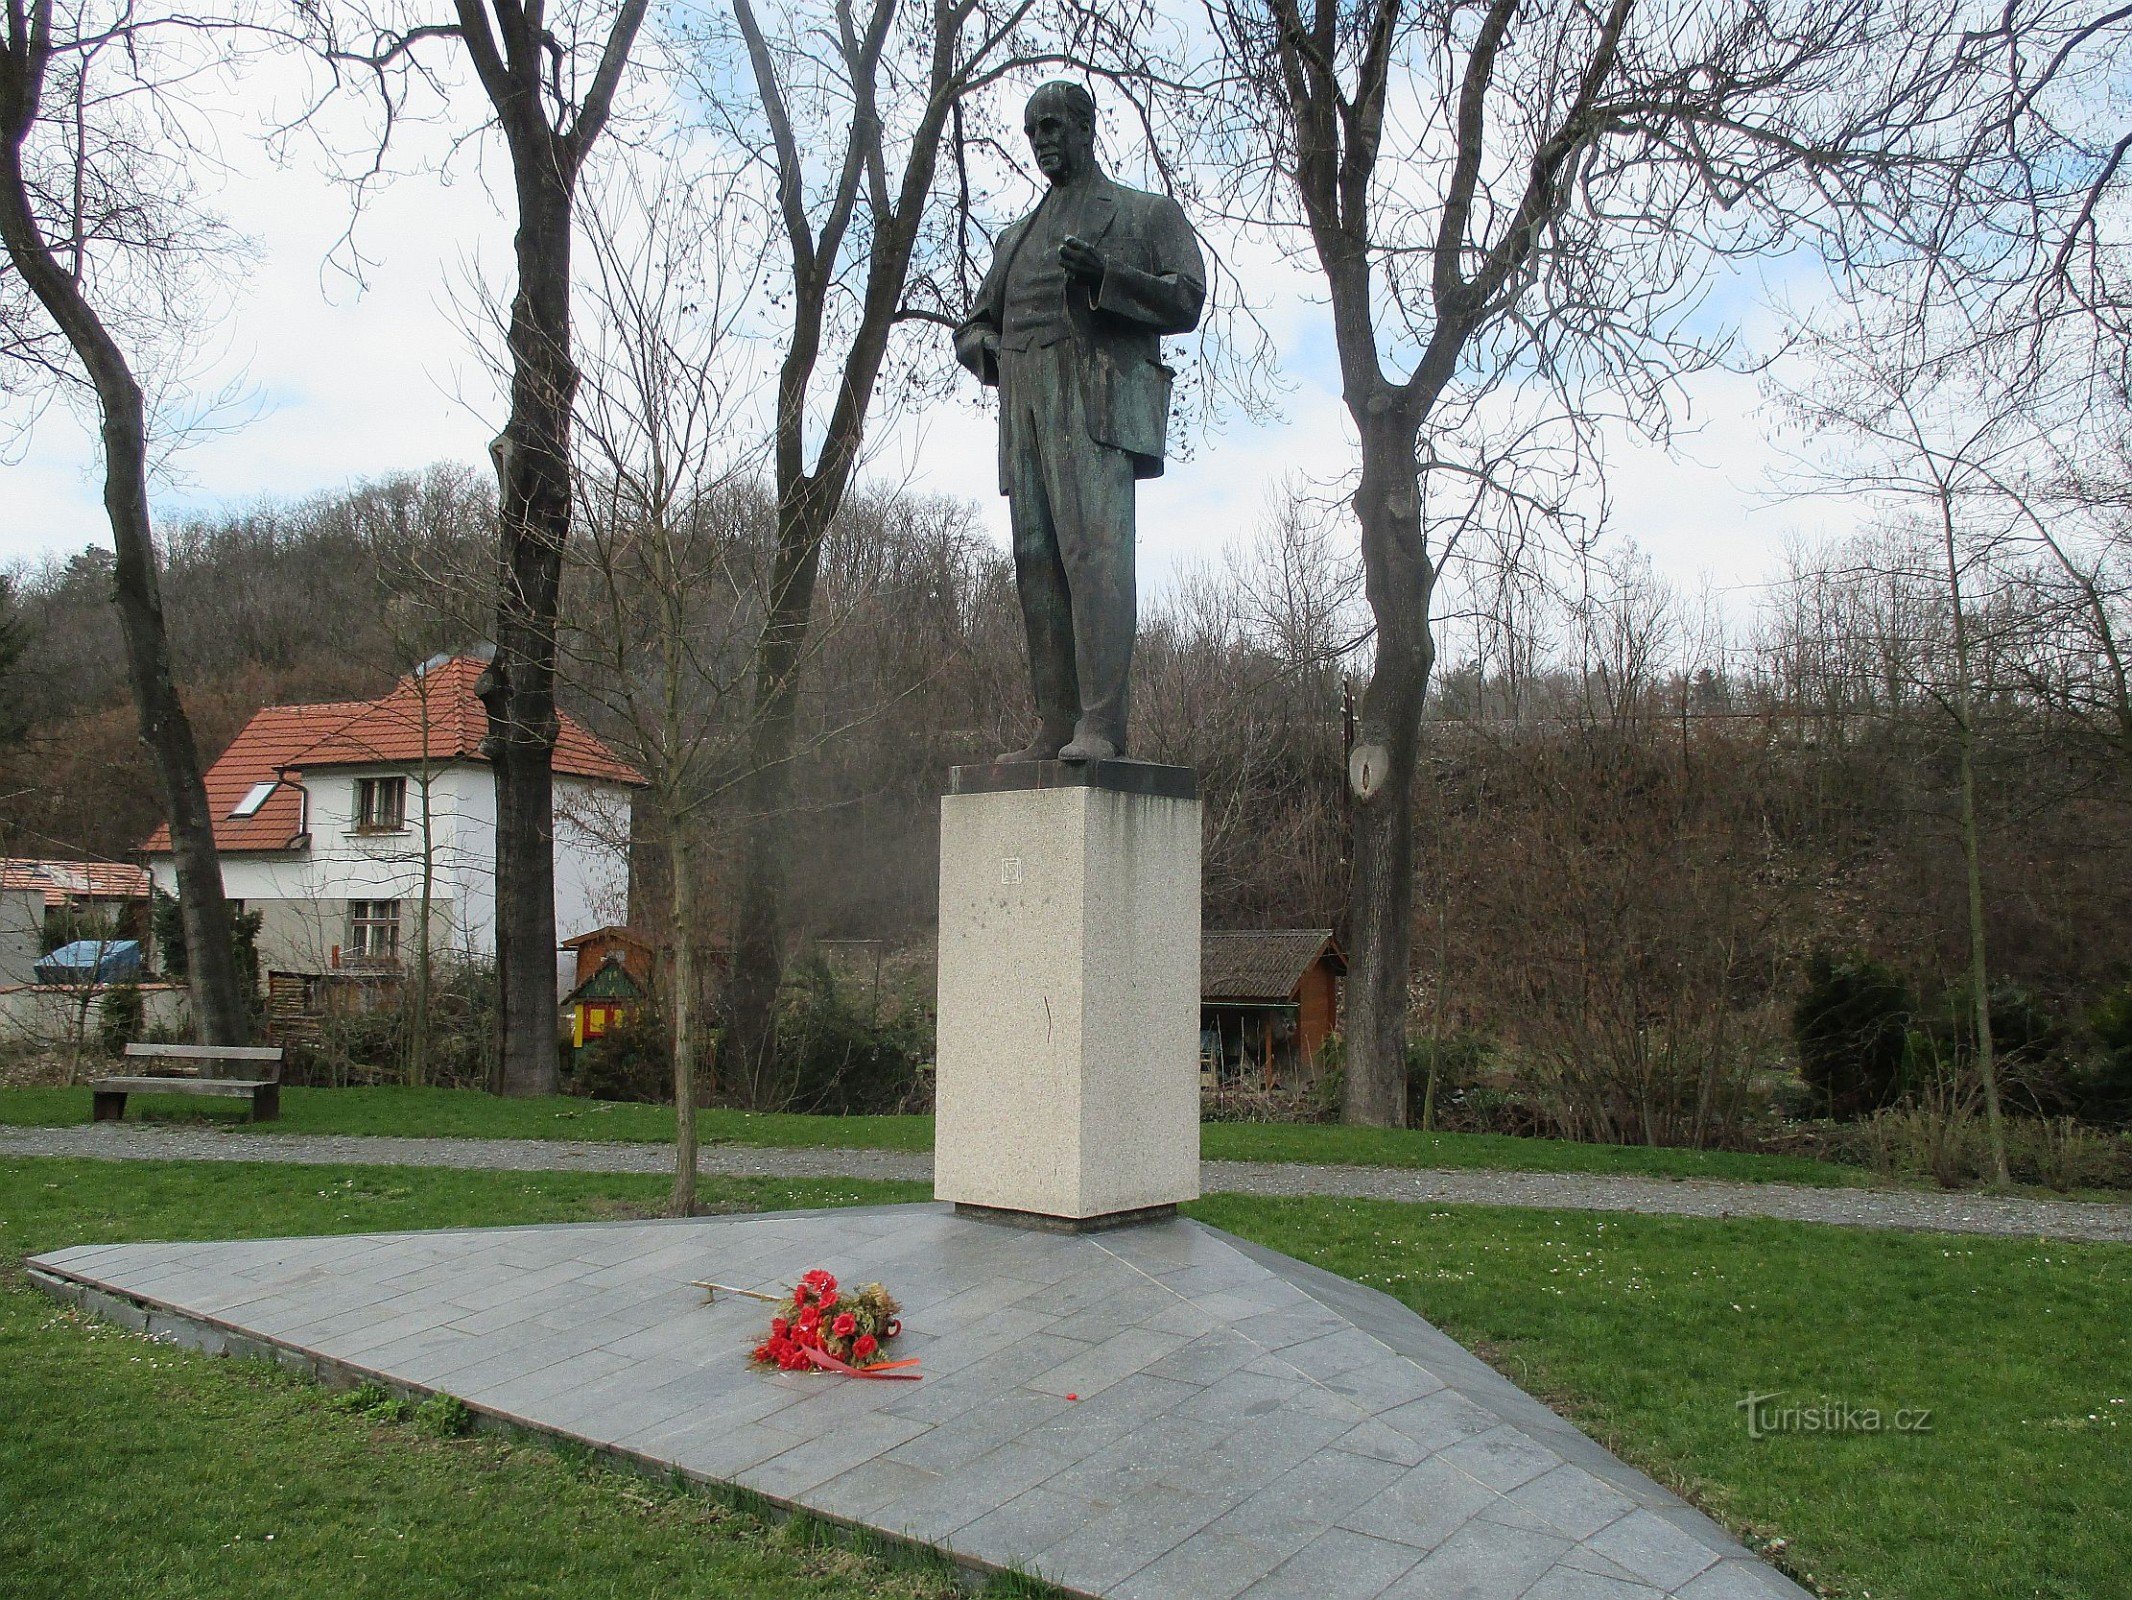 Spomenik radničkom predsjedniku u Zákolane